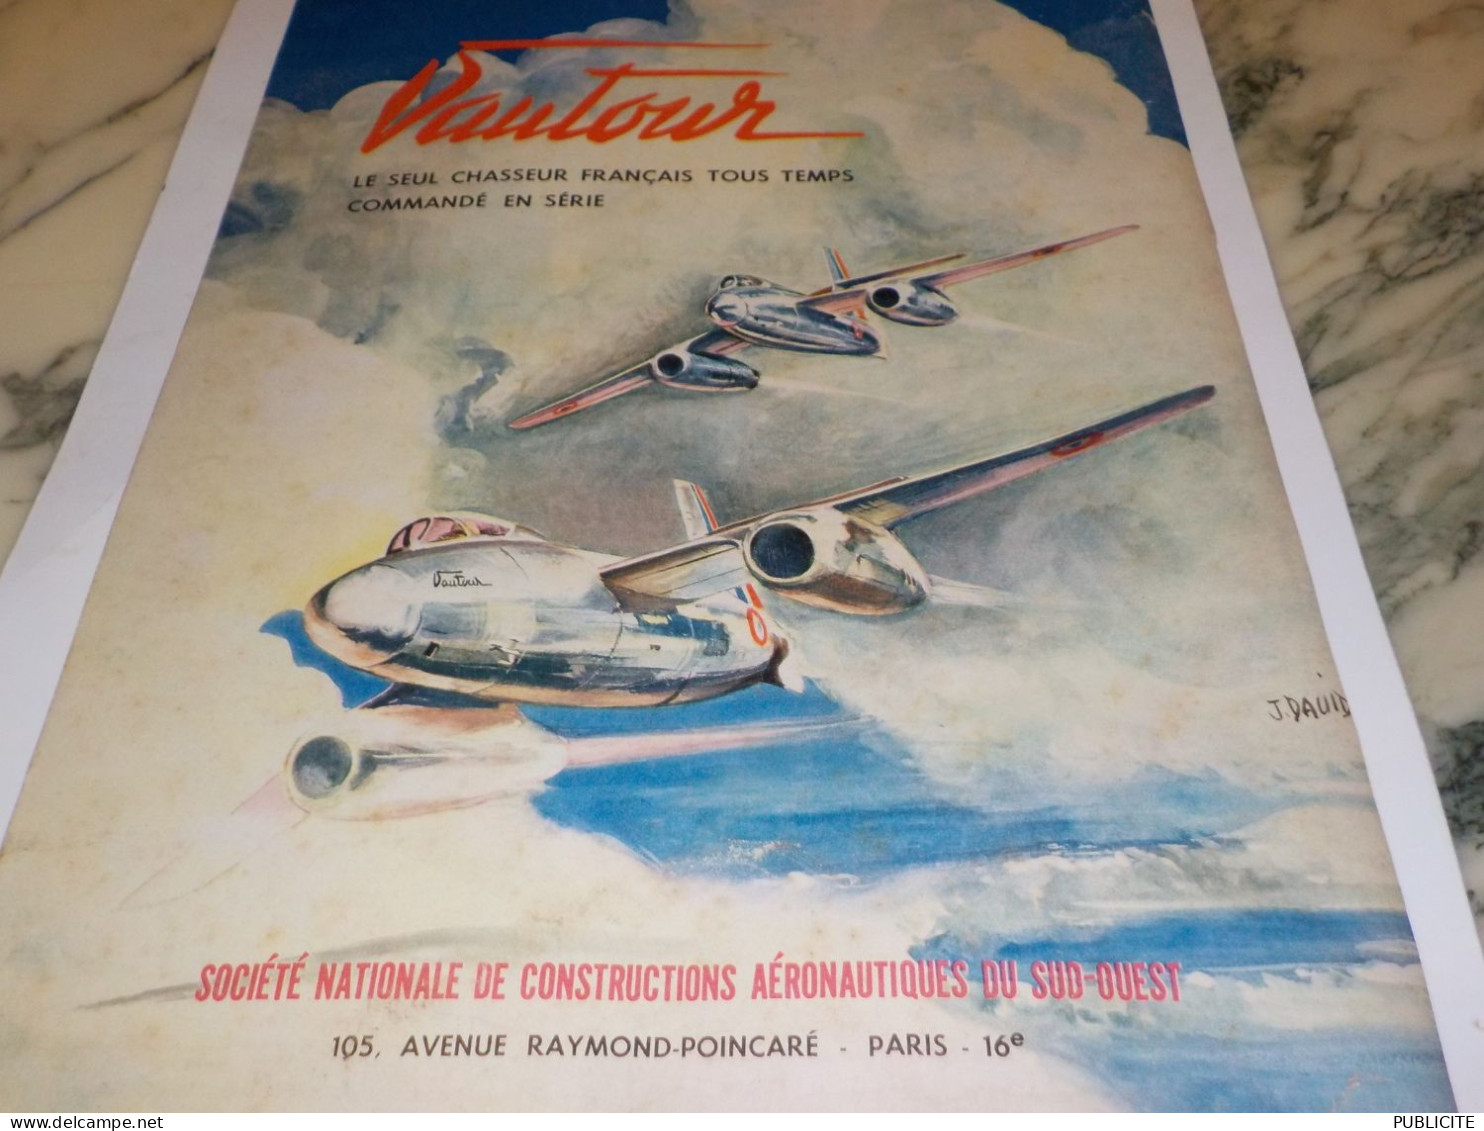 ANCIENNE PUBLICITE CHASSEUR FRANCAIS VAUTOUR 1955 - Advertisements